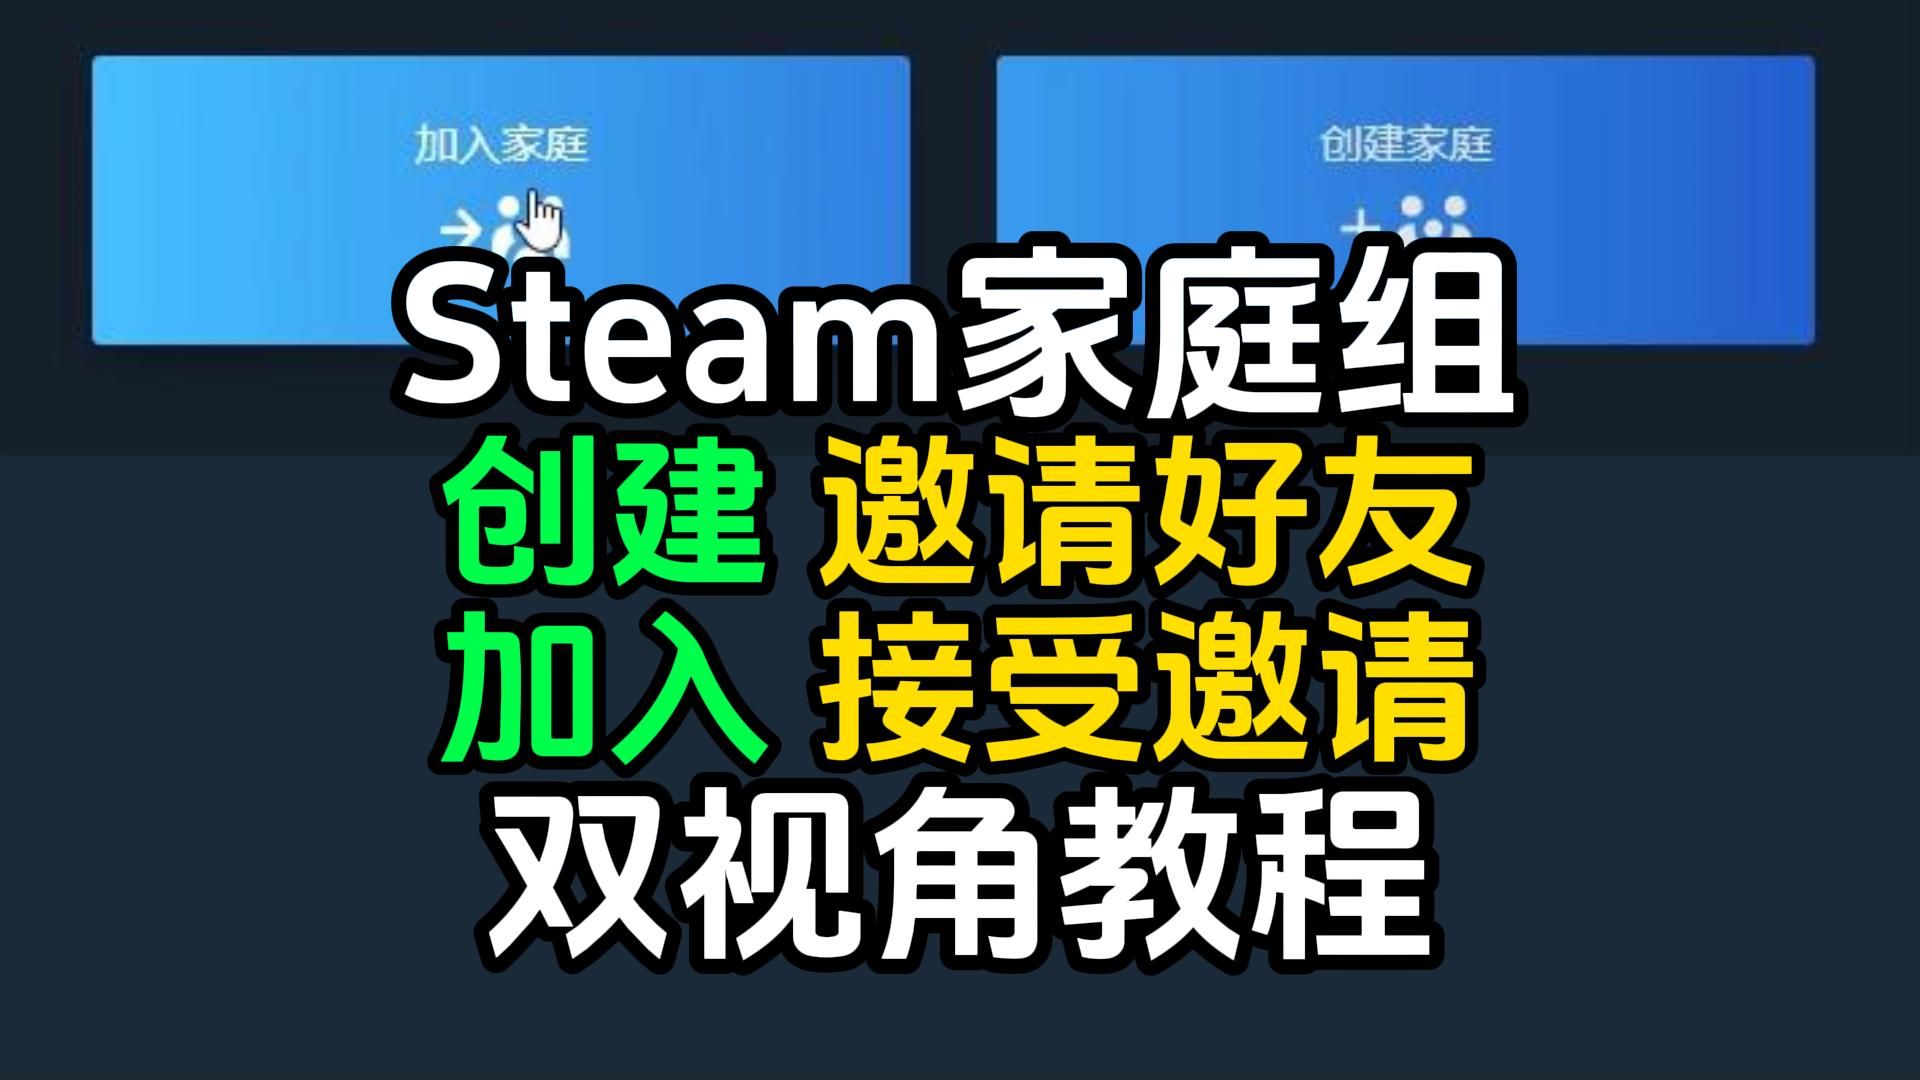 【萌新必看】Steam家庭共享设置教程，创建家庭组丨邀请好友和加入家庭组丨接受邀请双视角教程